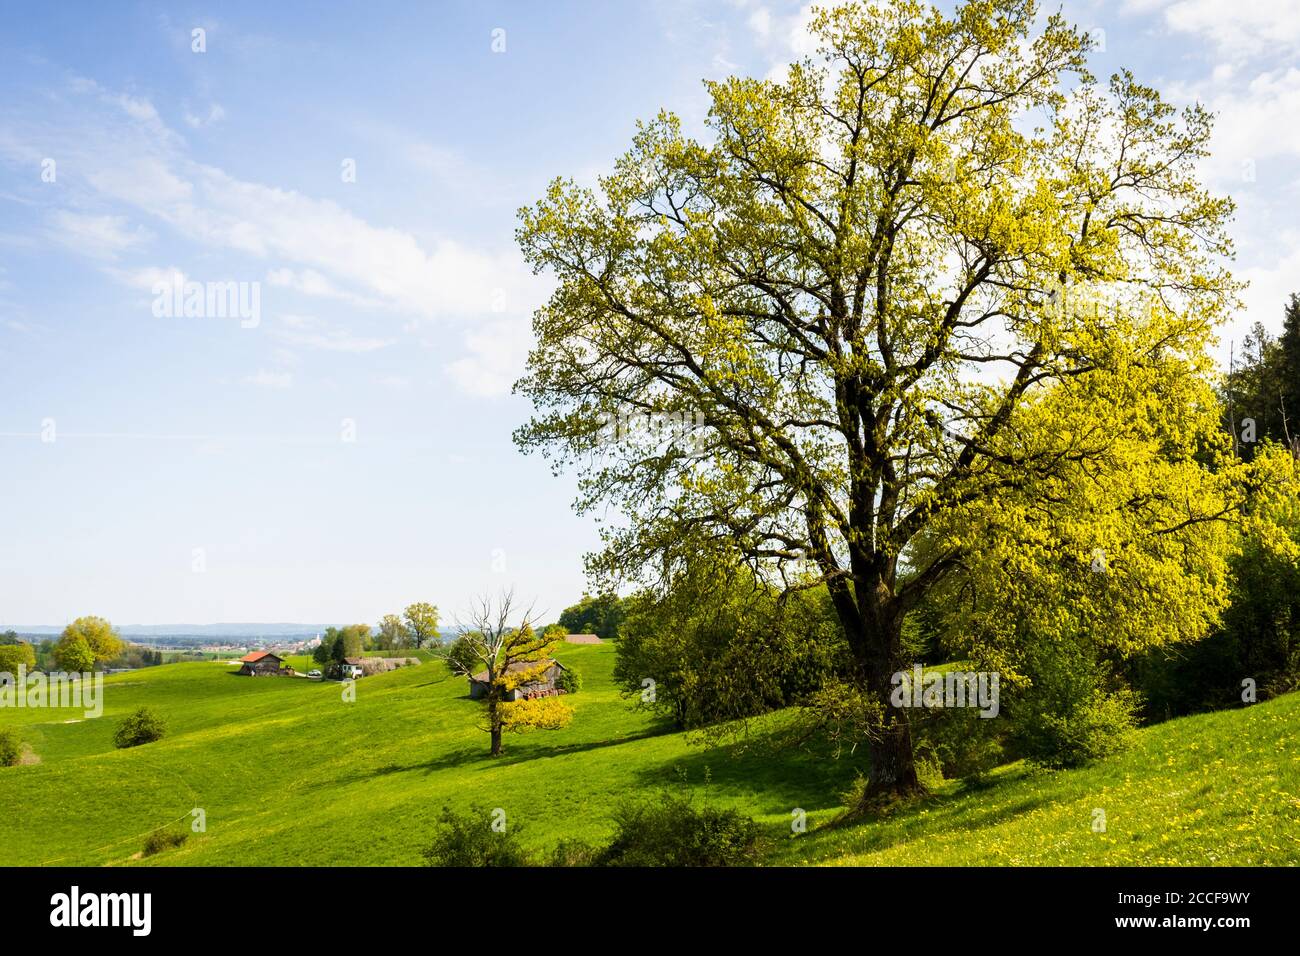 Germany, Bavaria, Blühender Baum bei Sindelsdorf Stock Photo